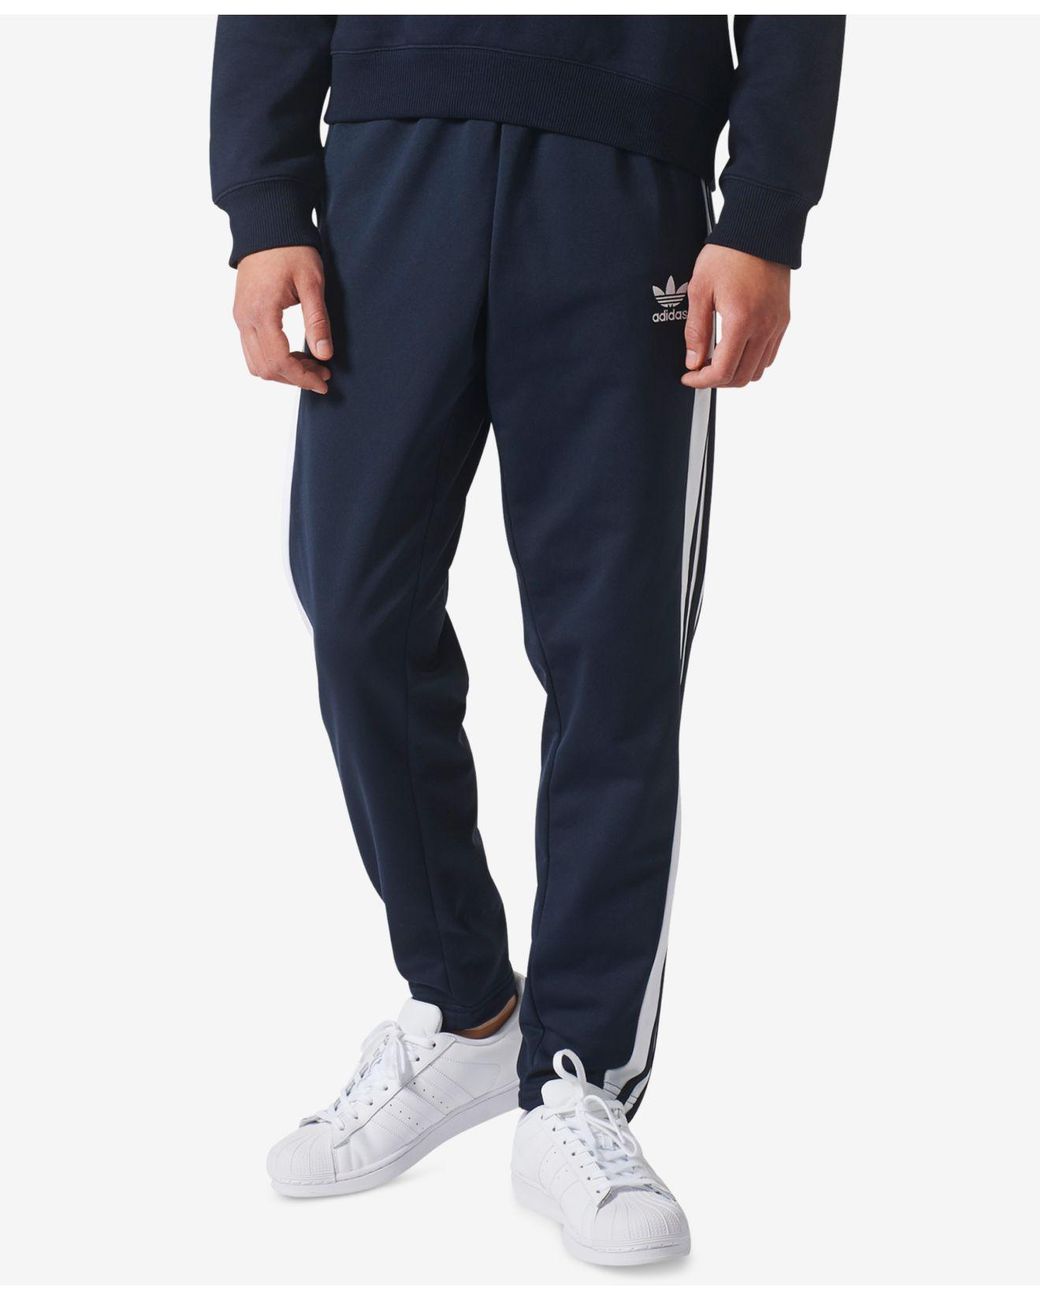  Adidas Tearaway Pants